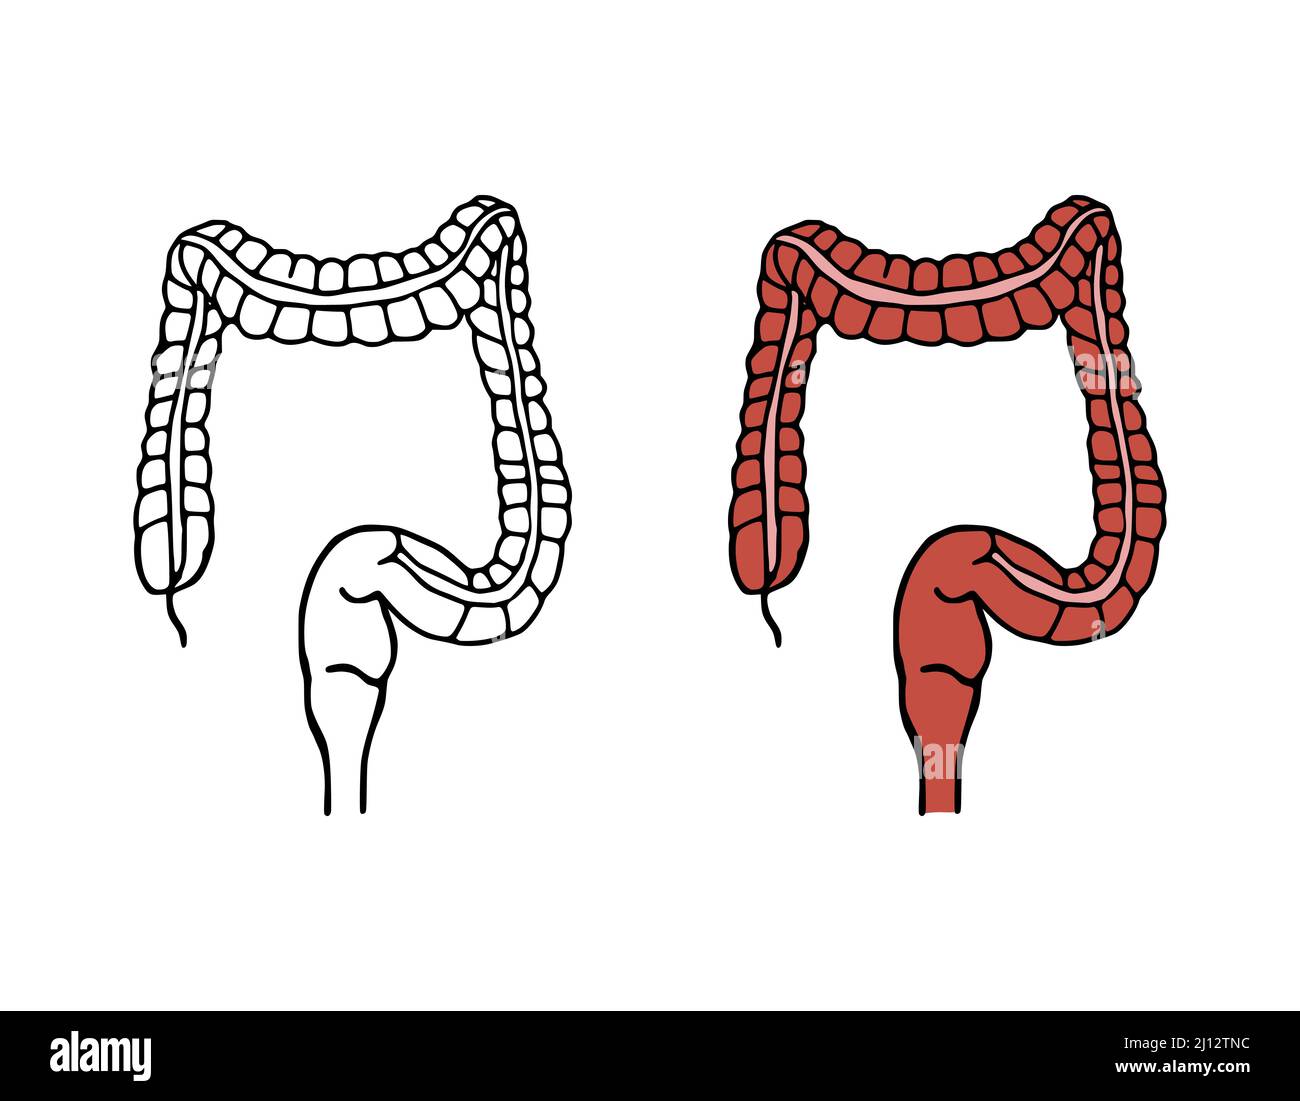 Illustrazione del vettore colon doodle. Icone cartoni animati del sistema digestivo isolate su sfondo bianco. Organo interno umano in stile disegnato a mano. Illustrazione Vettoriale